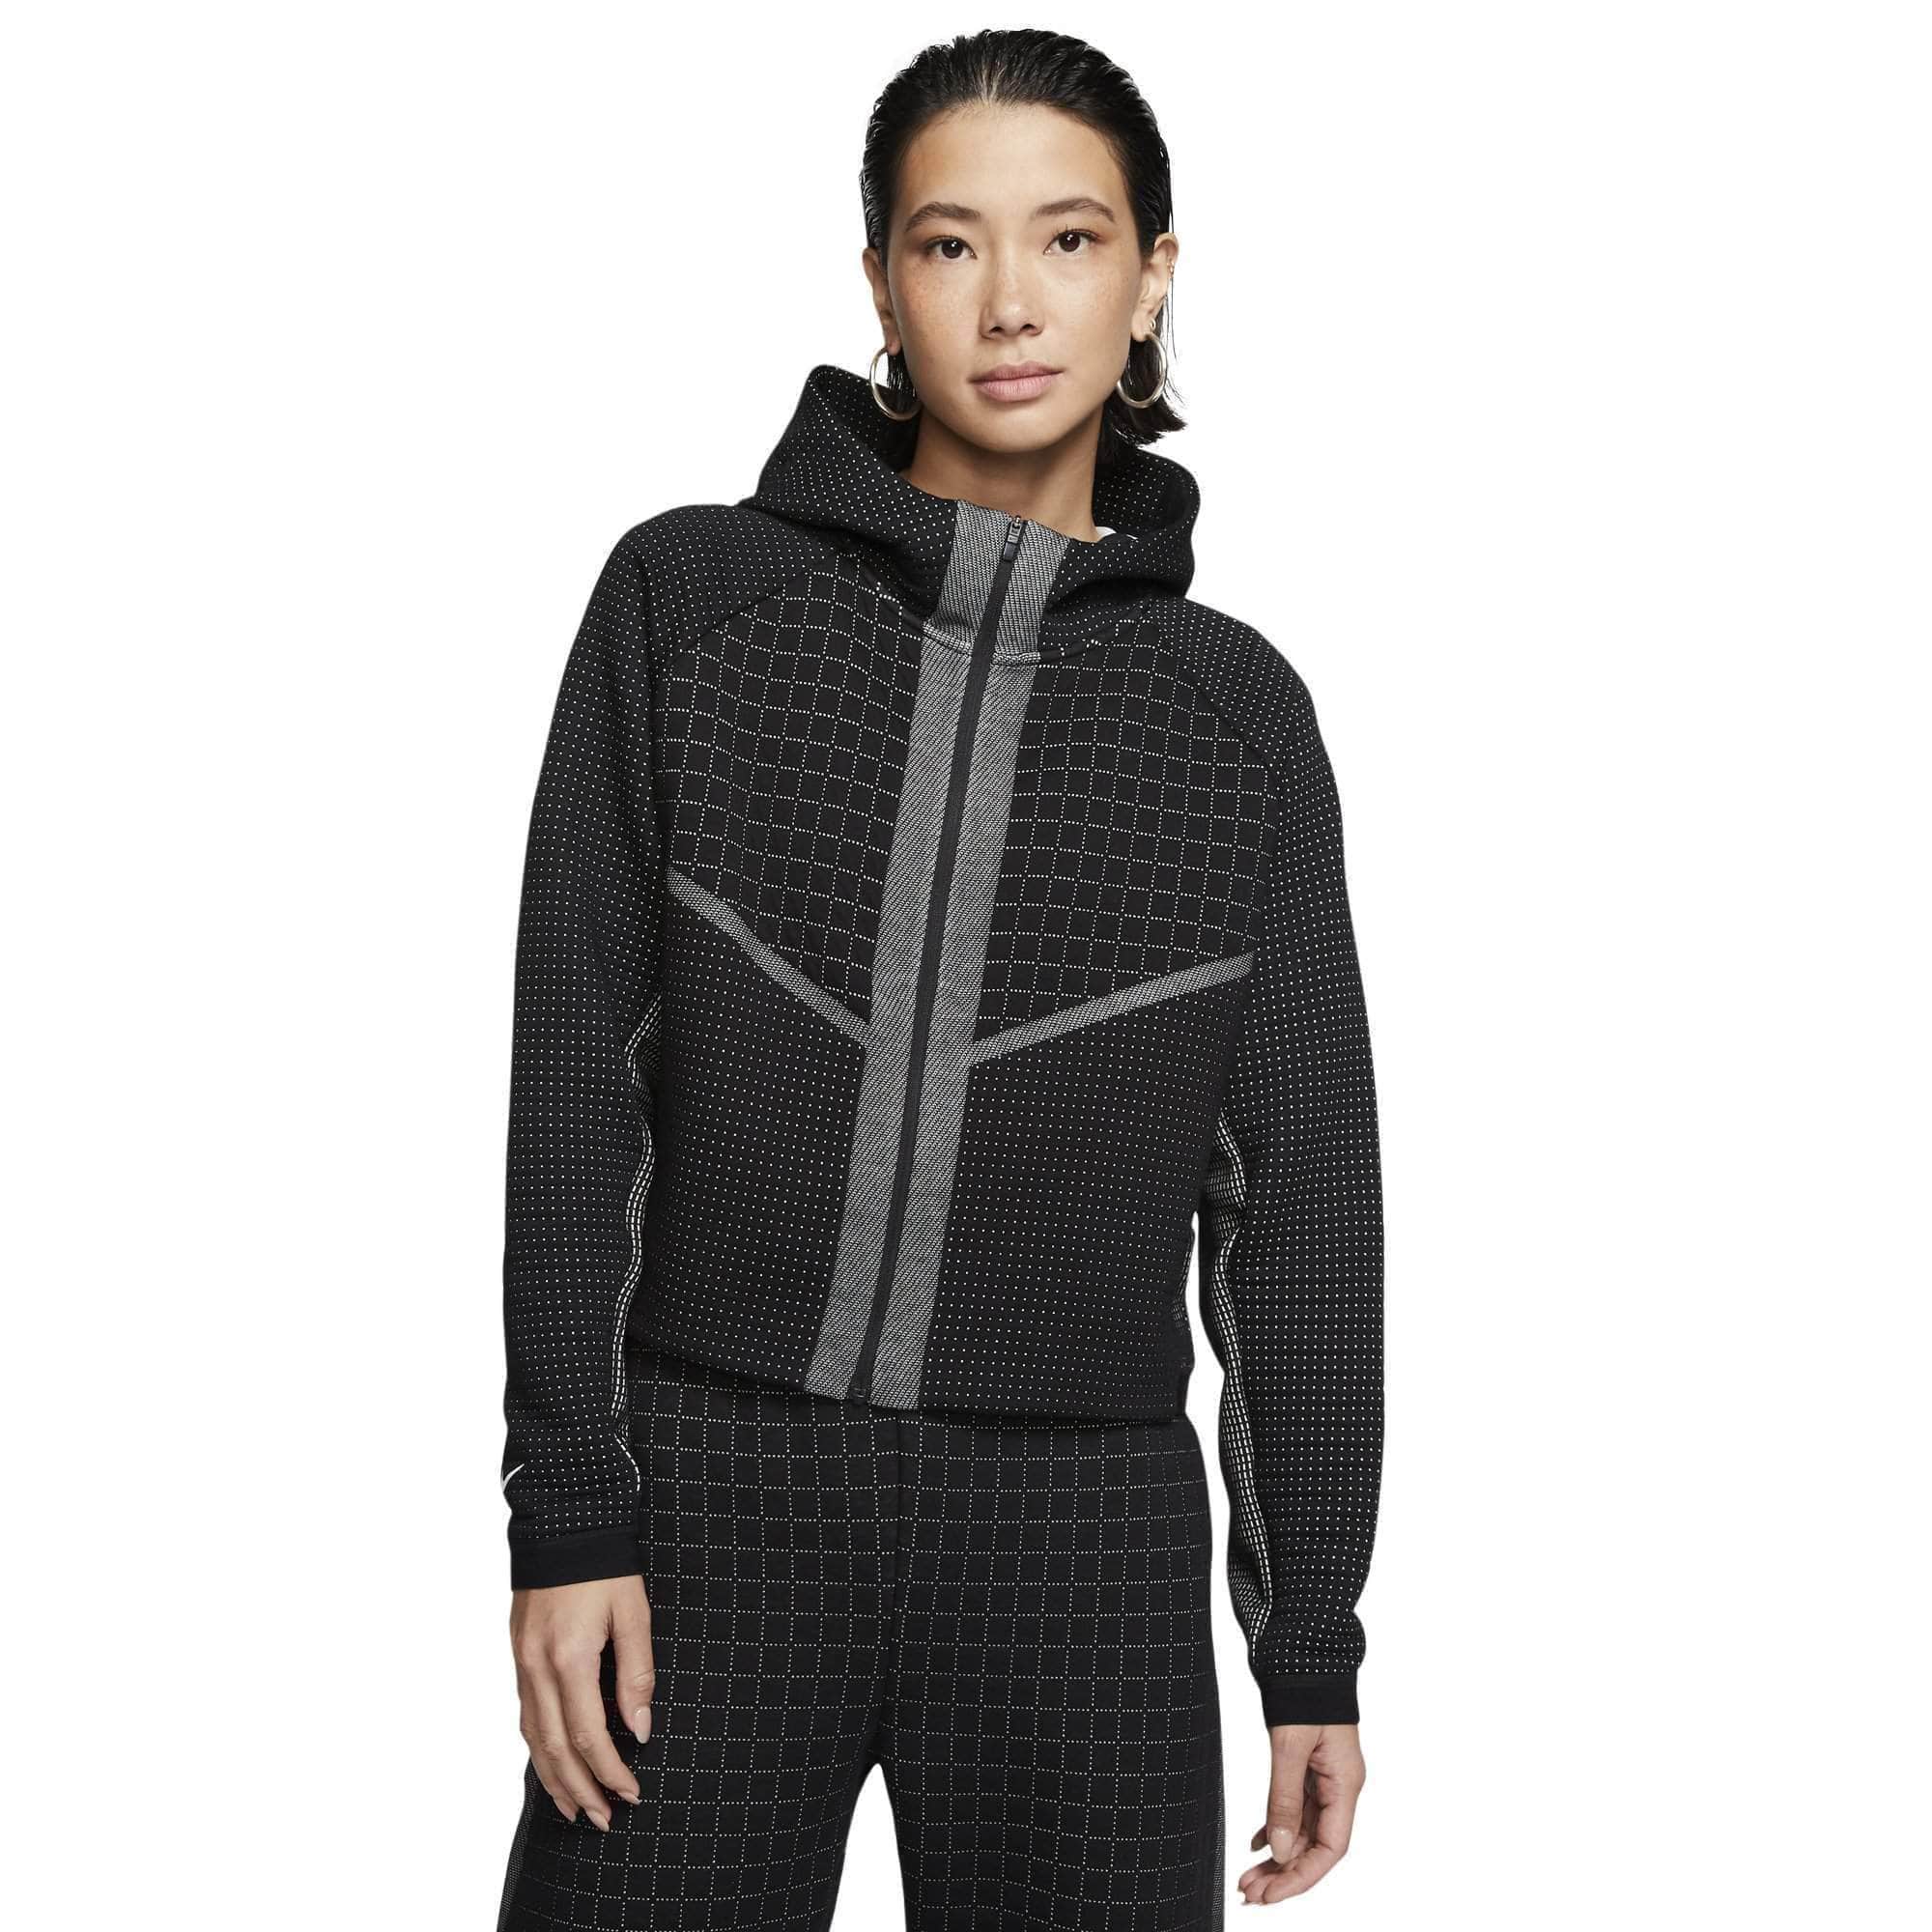 Drank maagd Goed opgeleid Nike Sportswear City Ready Fleece Full-Zip Jacket - Women's - GBNY